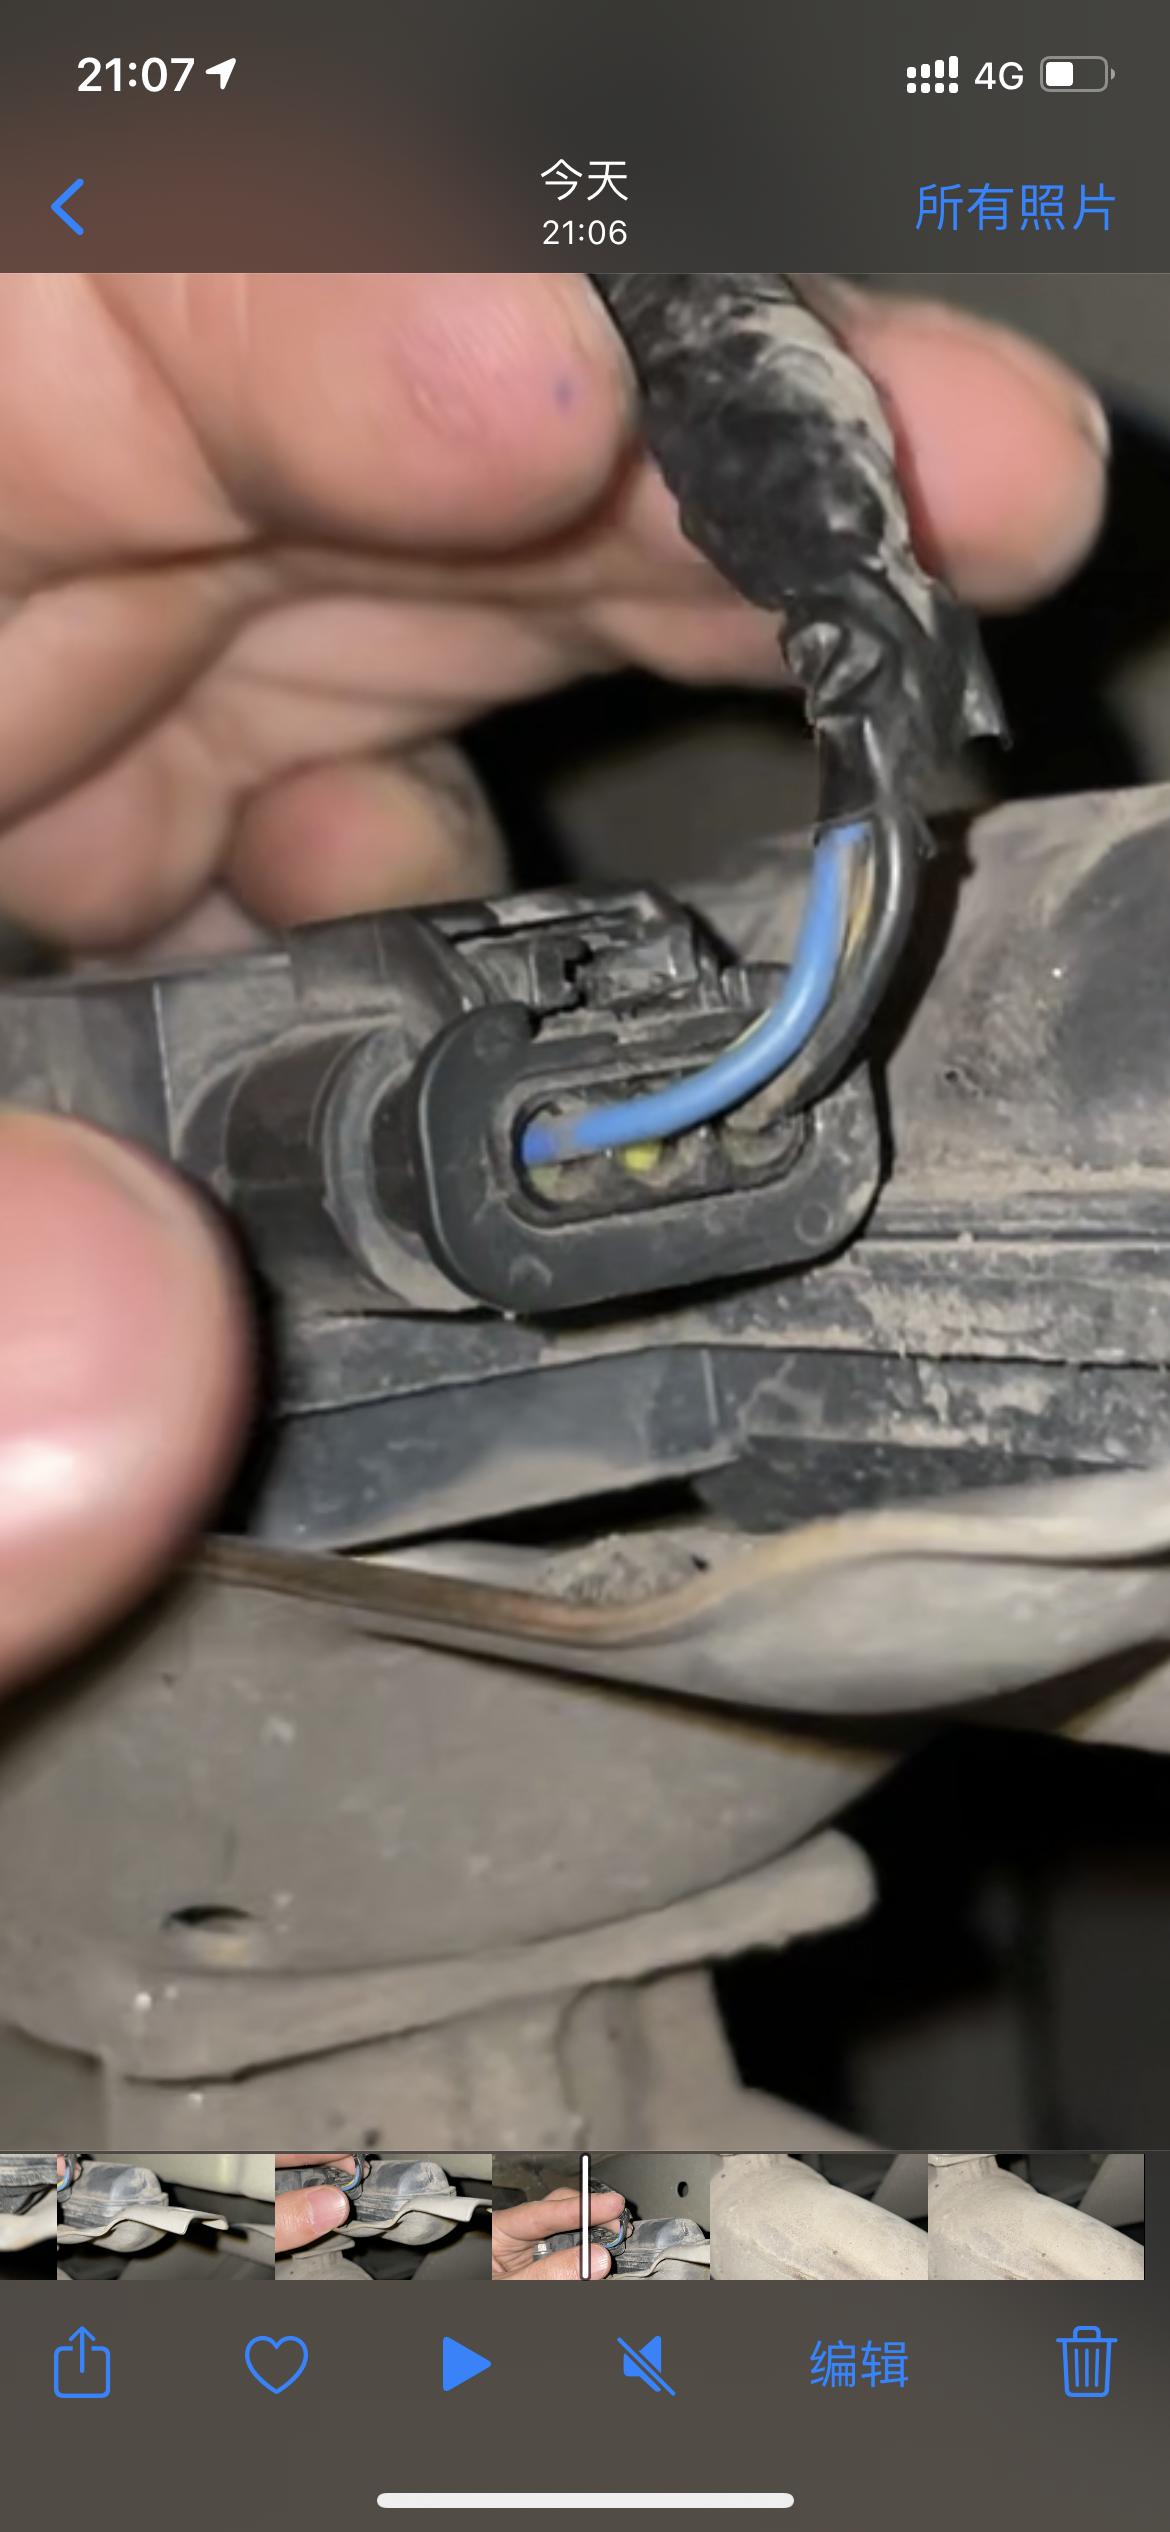 领克03 03+ 排气阀门的插头怎么拔下来？求助，买了排气阀门开关，需要拔这个插头，但一直拔不下来，这个应该怎么拔？